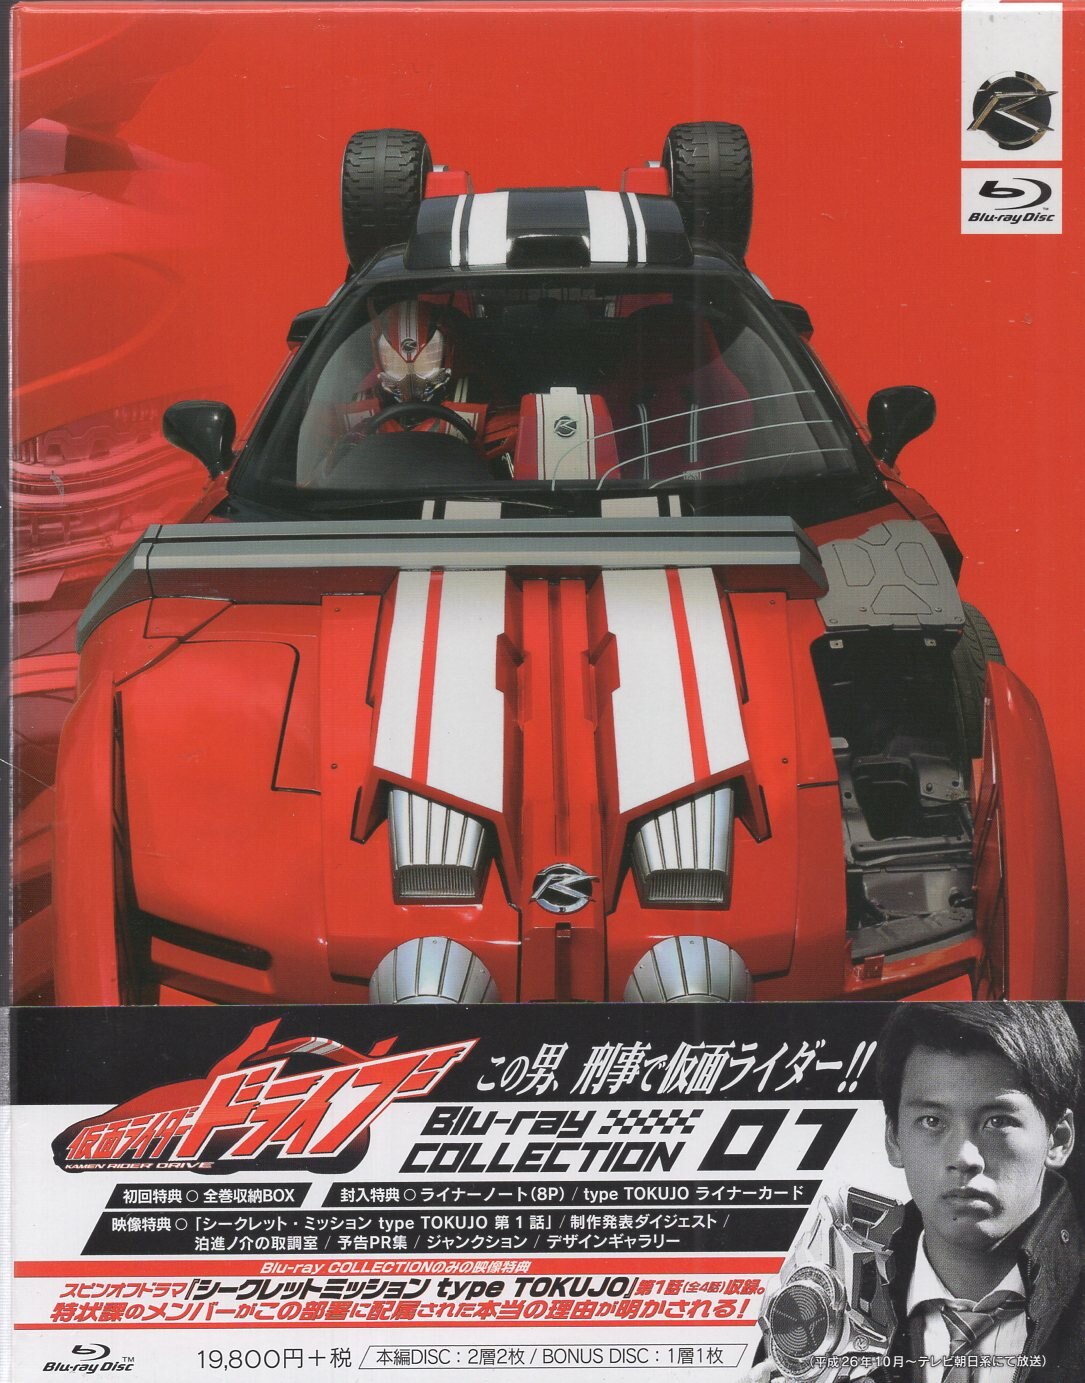 柔らかい 仮面ライダードライブ 全巻収納BOX付 初回版 1 BOX Blu-ray 